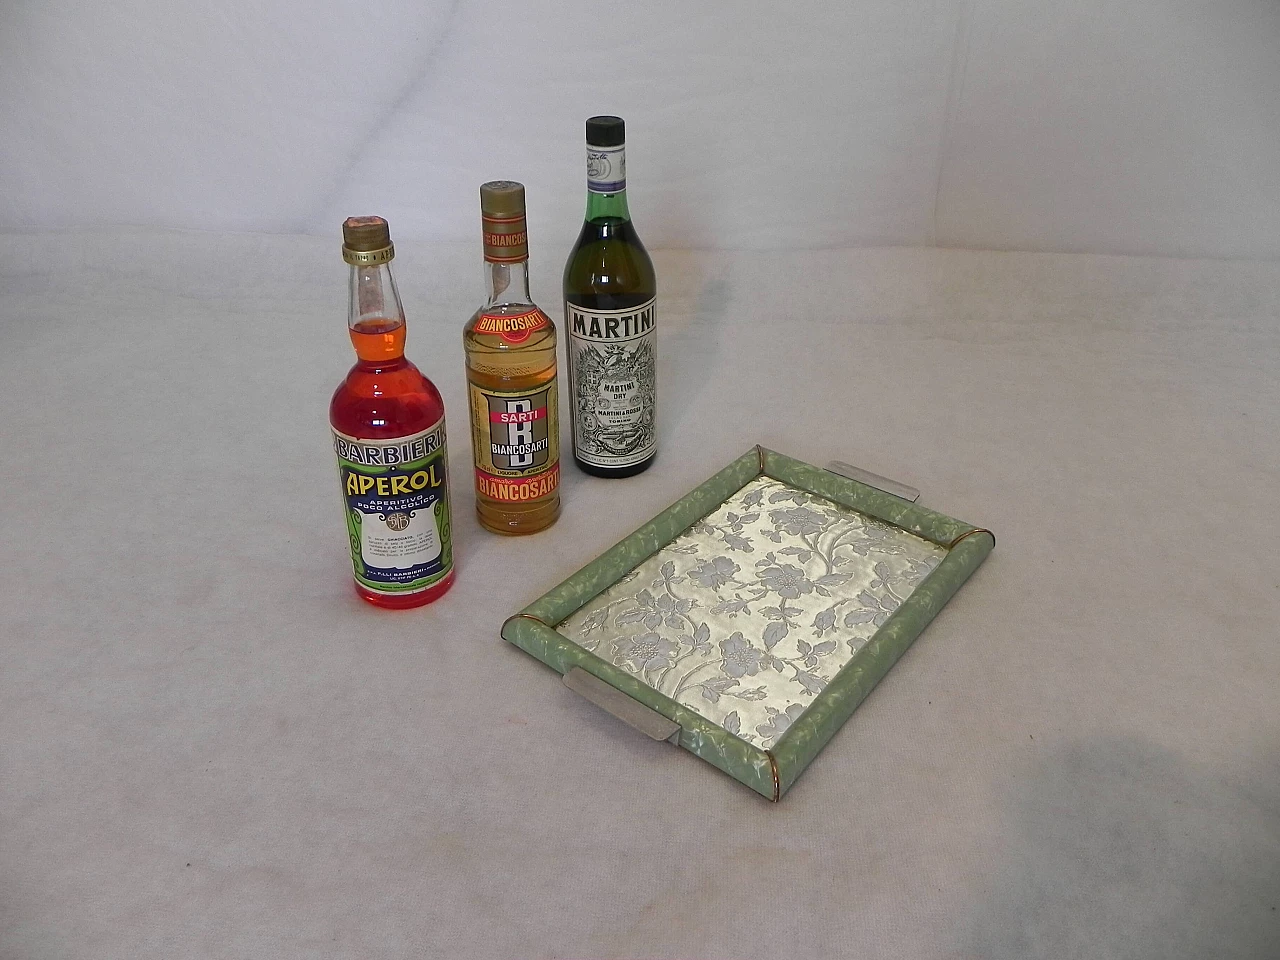 Pair of bakelite trays with 3 aperitif bottles, 1970s 1462762